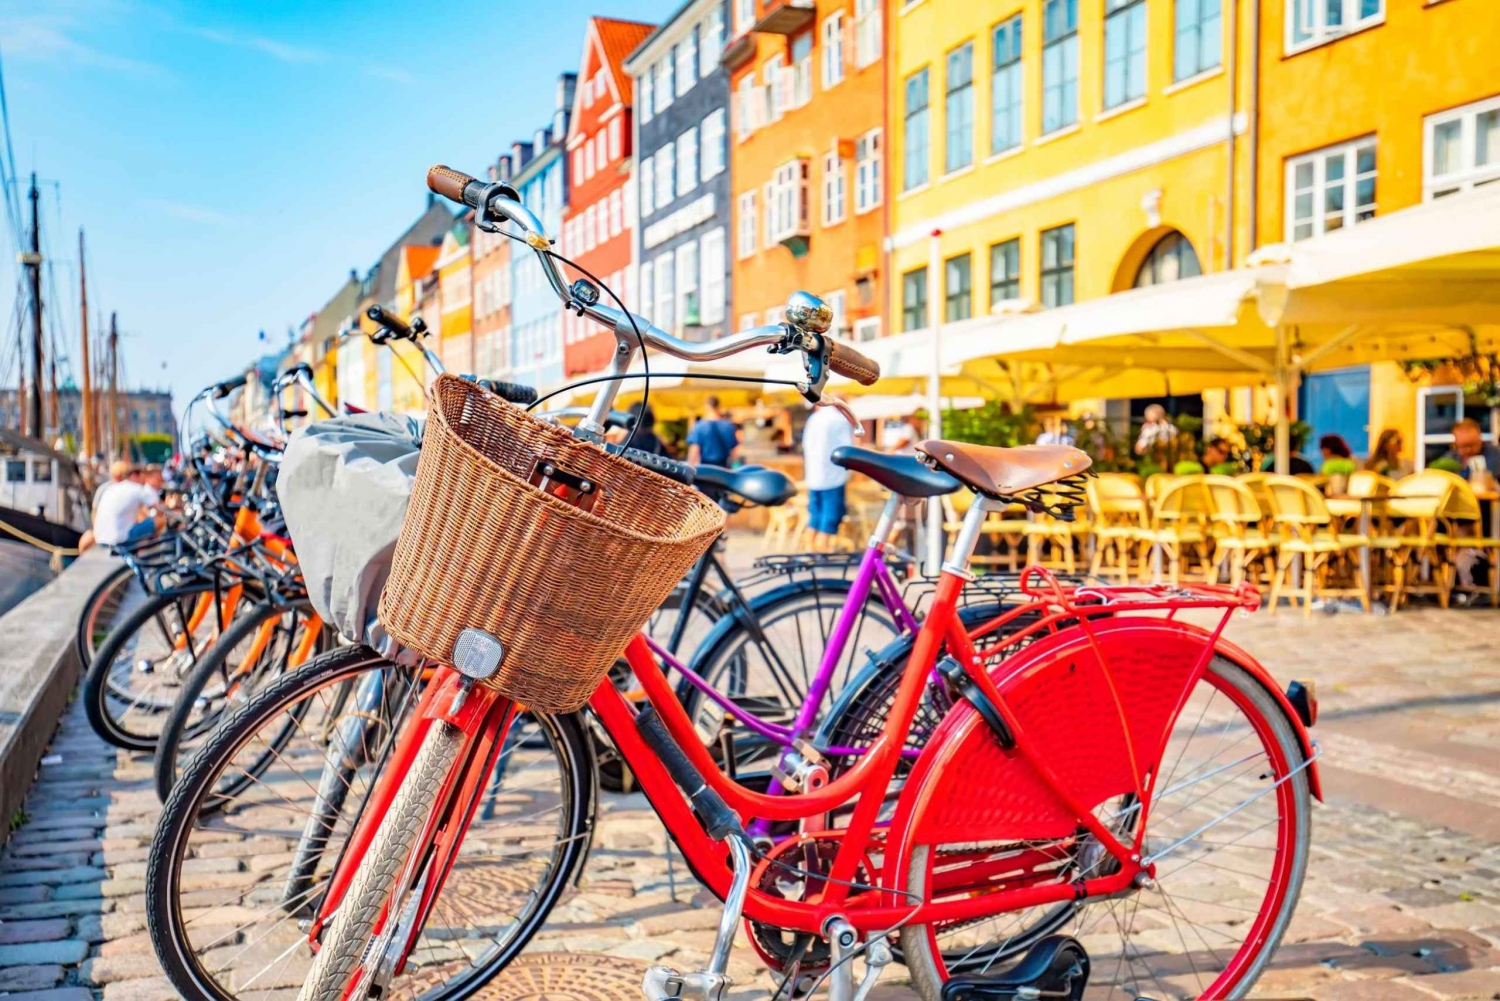 Grande tour in bicicletta del centro storico di Copenaghen, attrazioni e natura